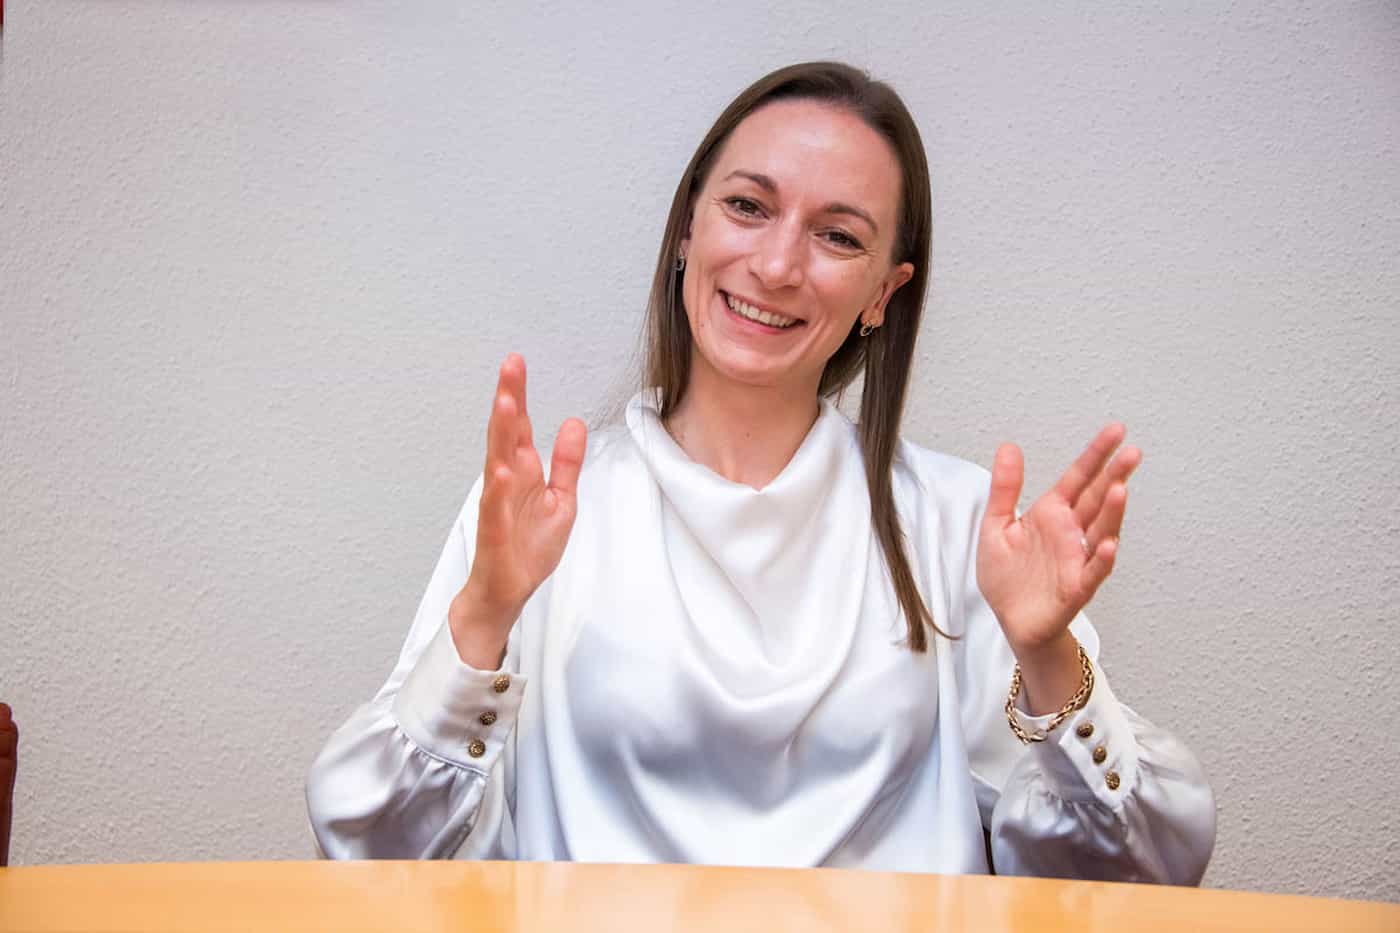 I.D. Gisela Bergmann, Prinzessin von und zu Liechtenstein, ist seit 2022 CEO von Industrie- und Finanzkontor Etablissement